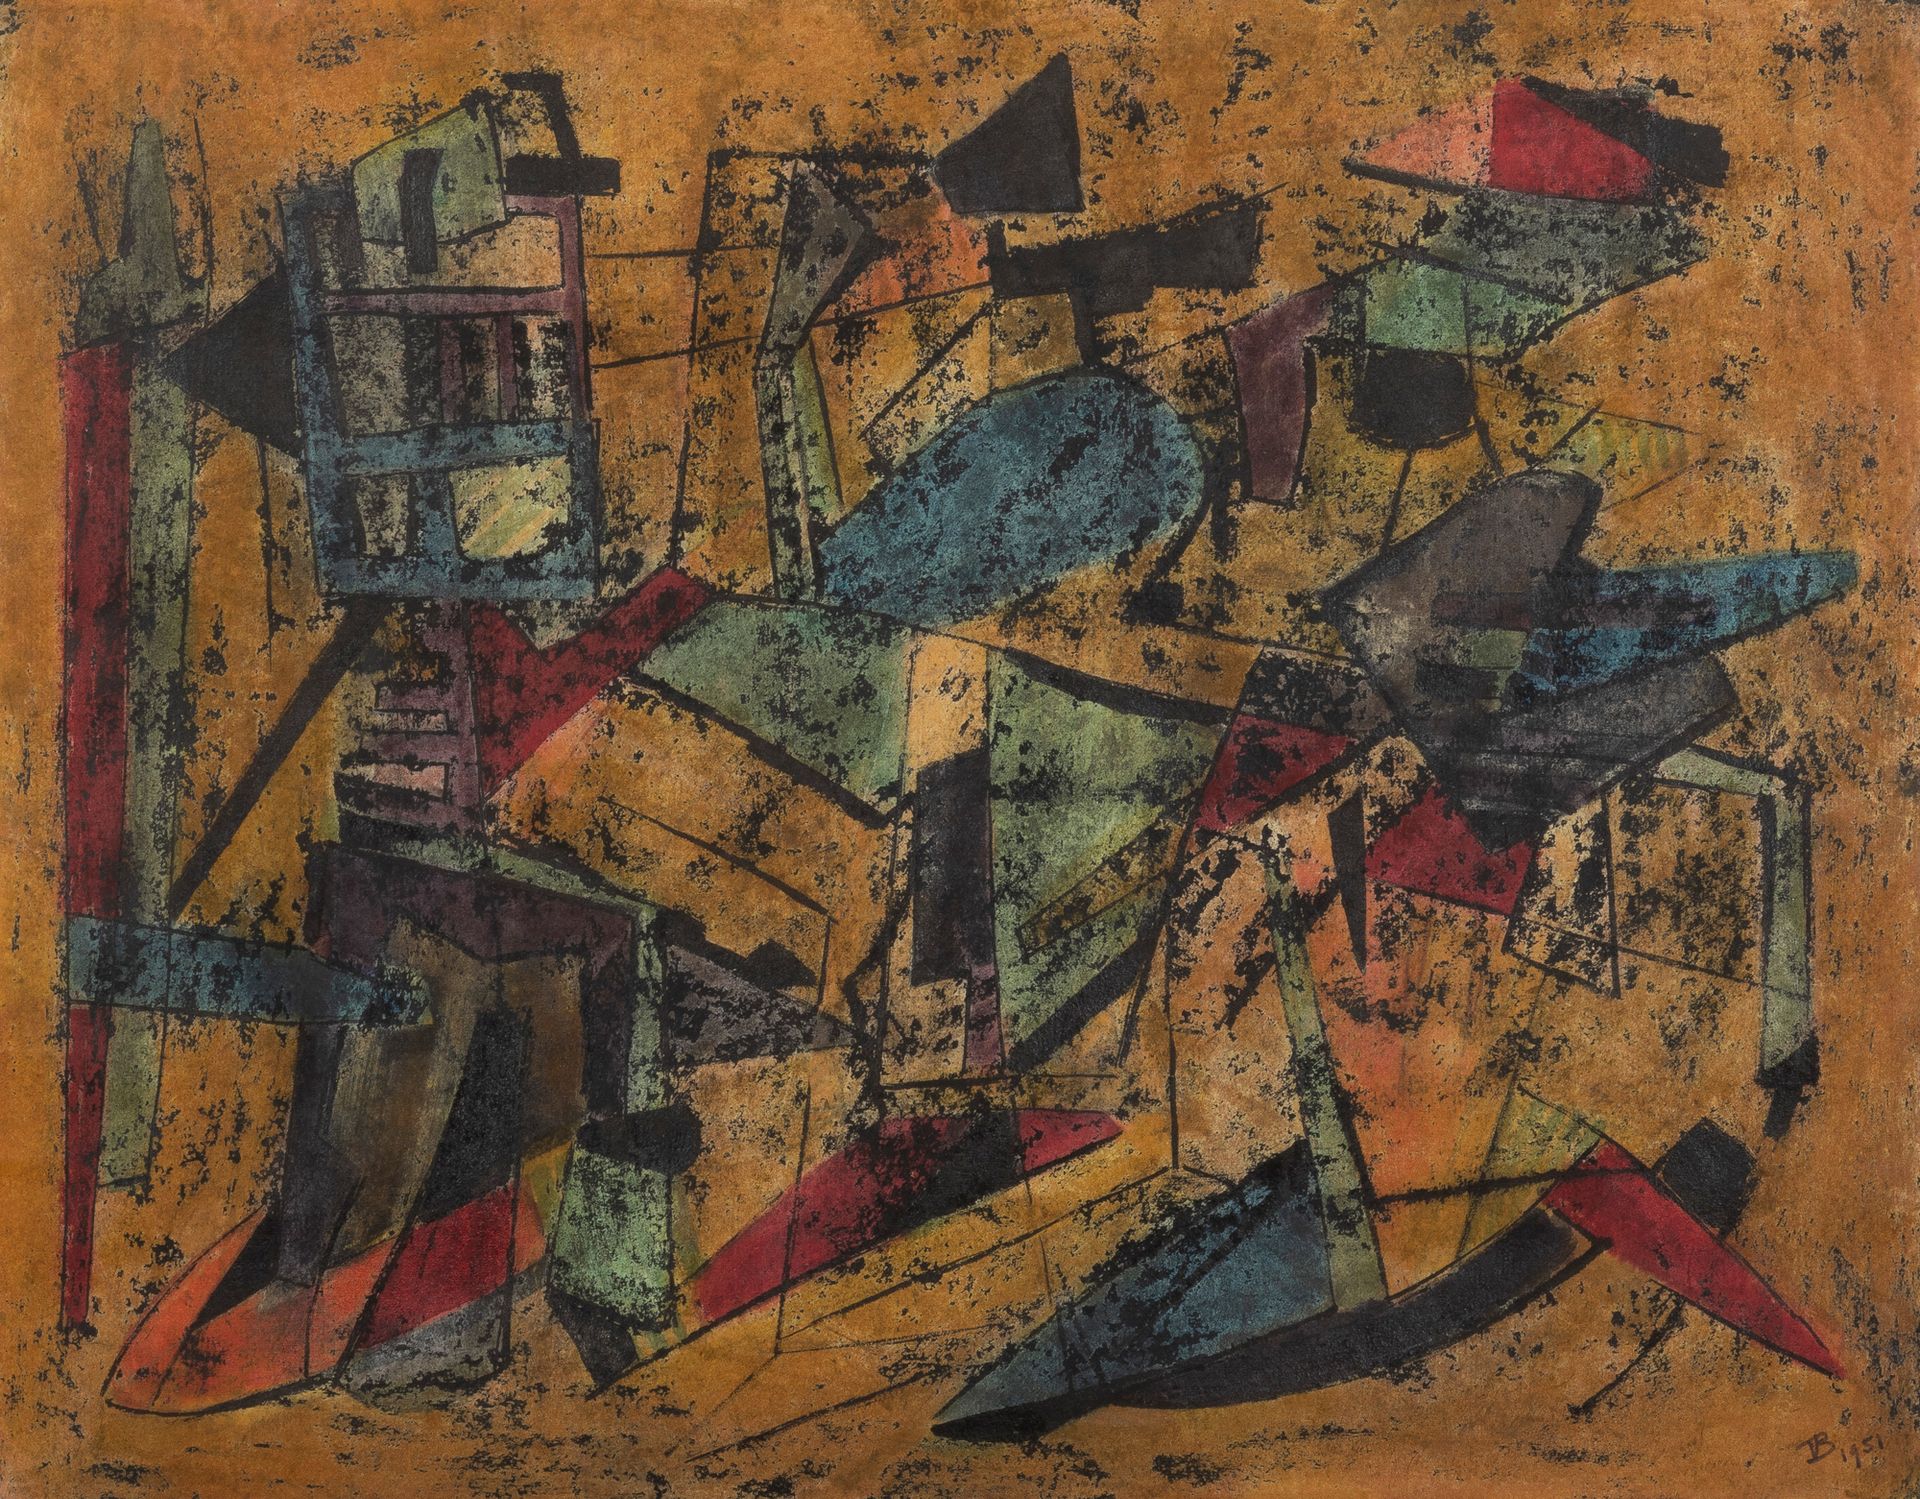 GUILLAUME VANDEN BORRE (1896-1984) Composición abstracta, 1951
Acuarela y tinta &hellip;